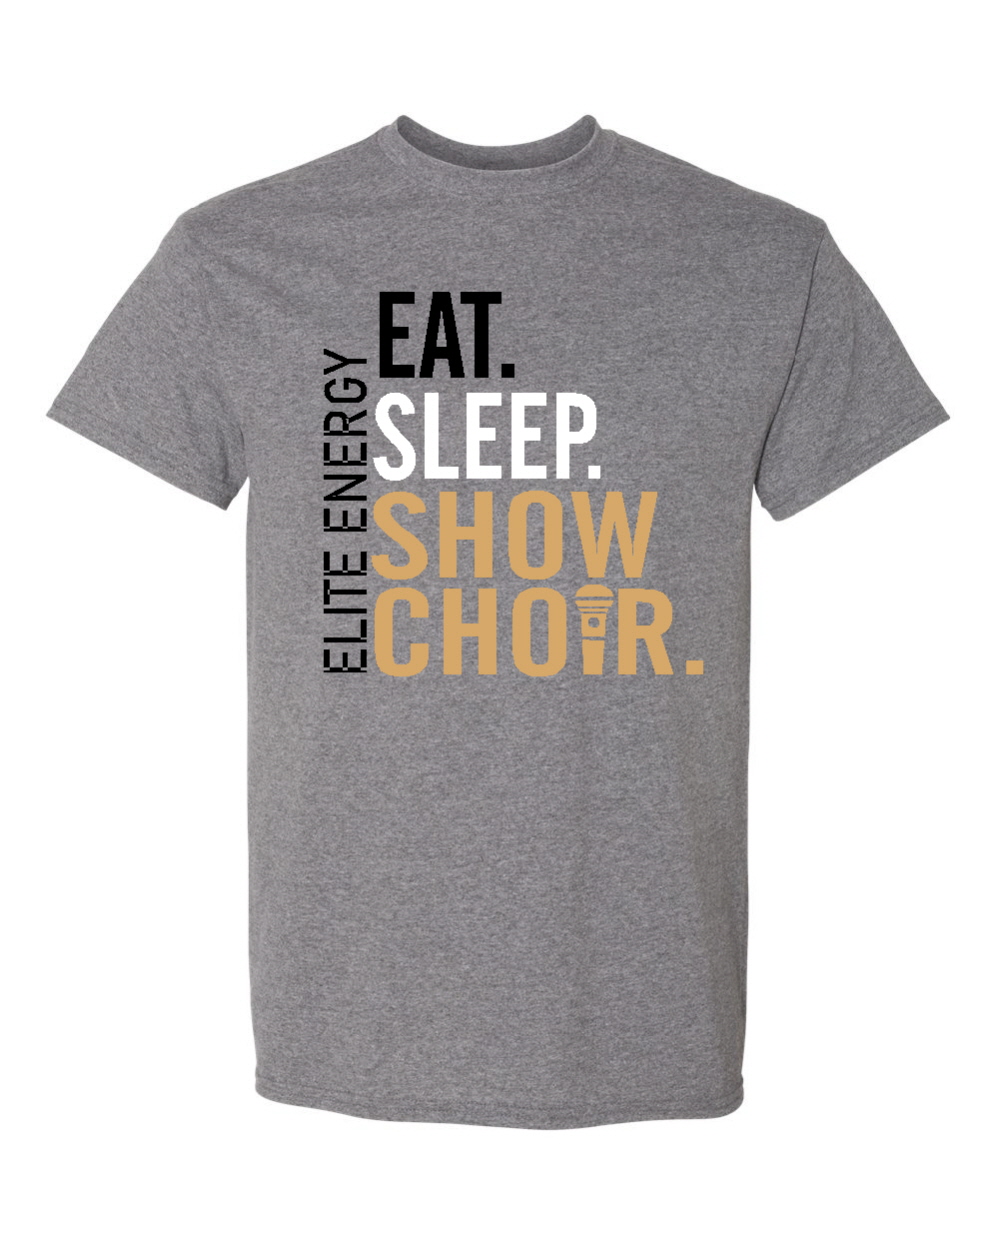 Eat sleep show choir